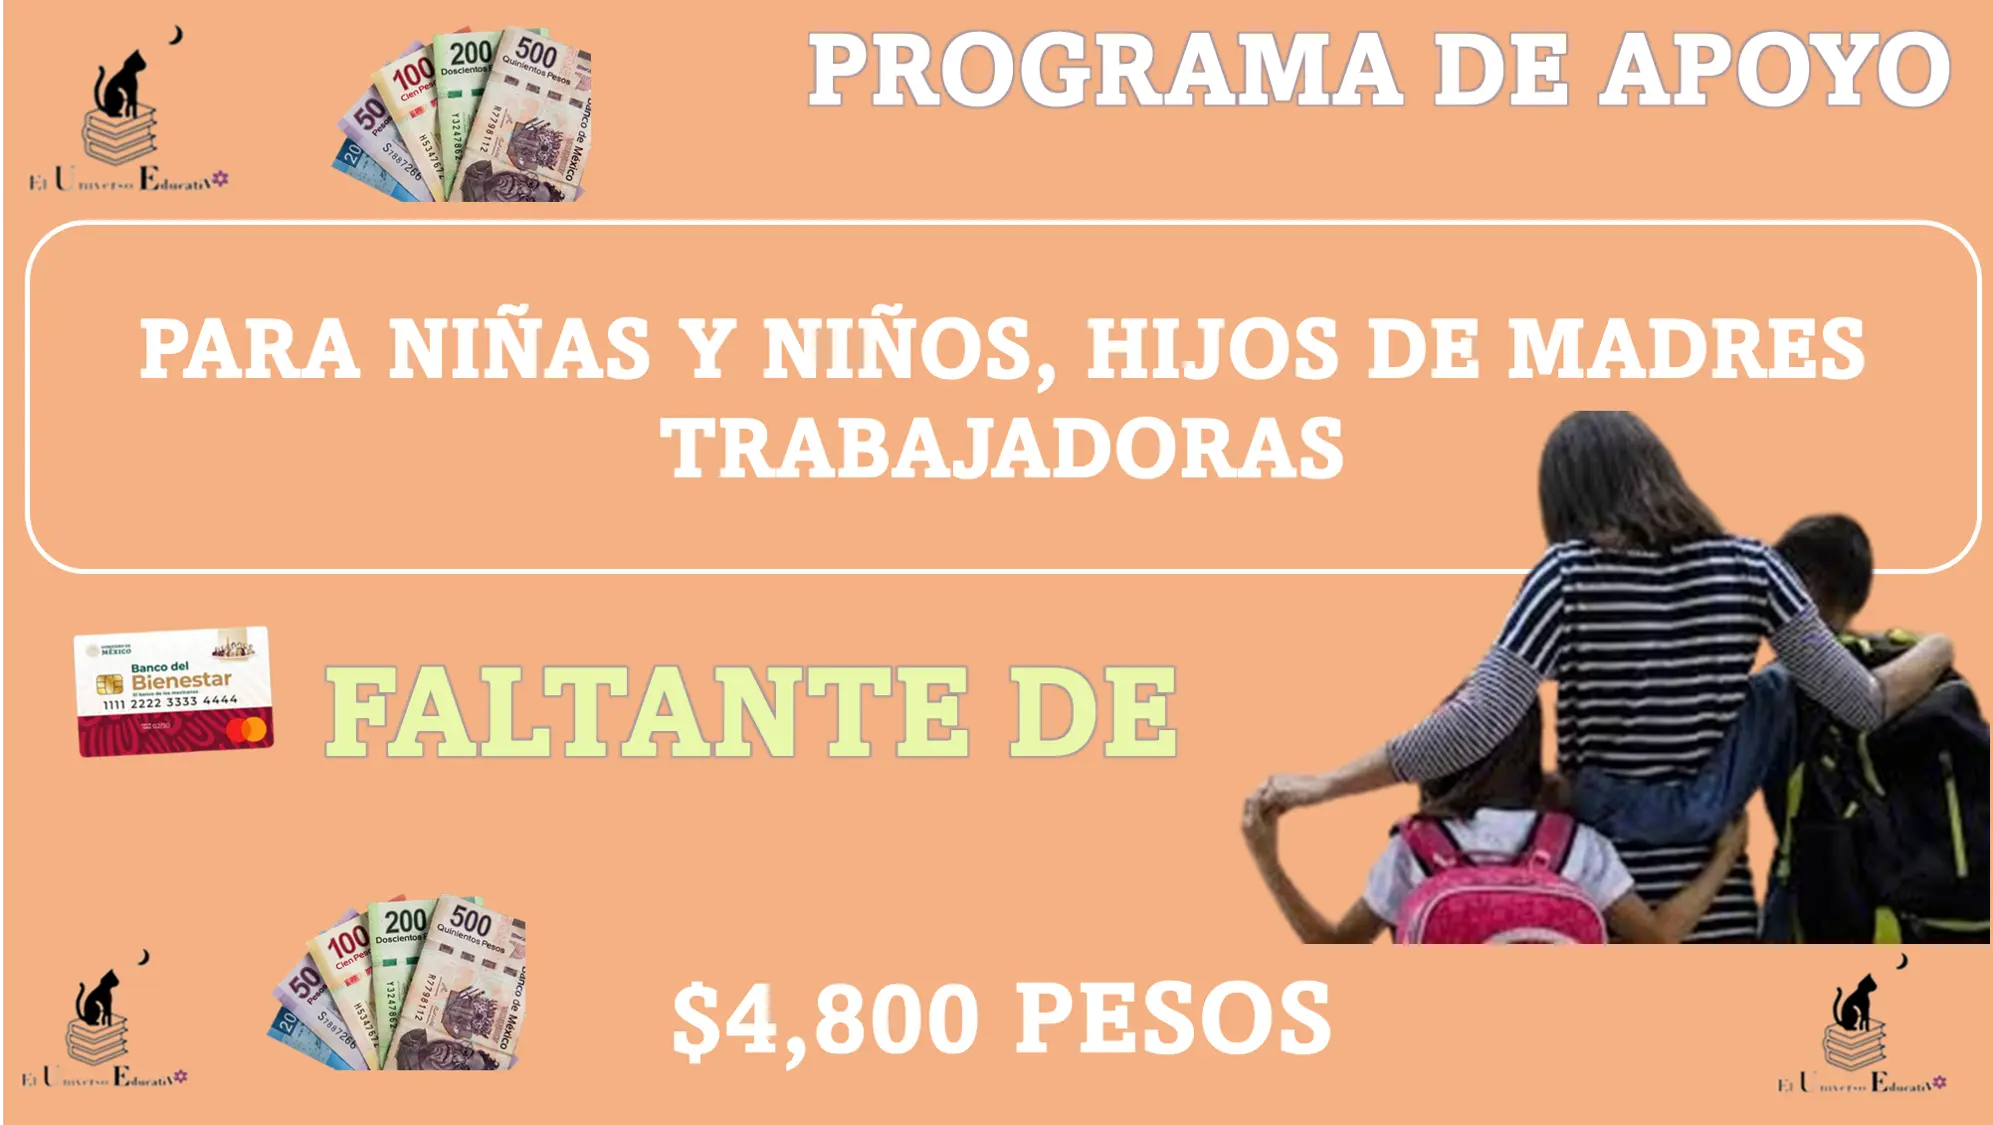 PROGRAMA DE APOYO PARA NIÑAS Y NIÑOS, HIJOS DE MADRES TRABAJADORAS | FALTANTE DE $4,800 PESOS 